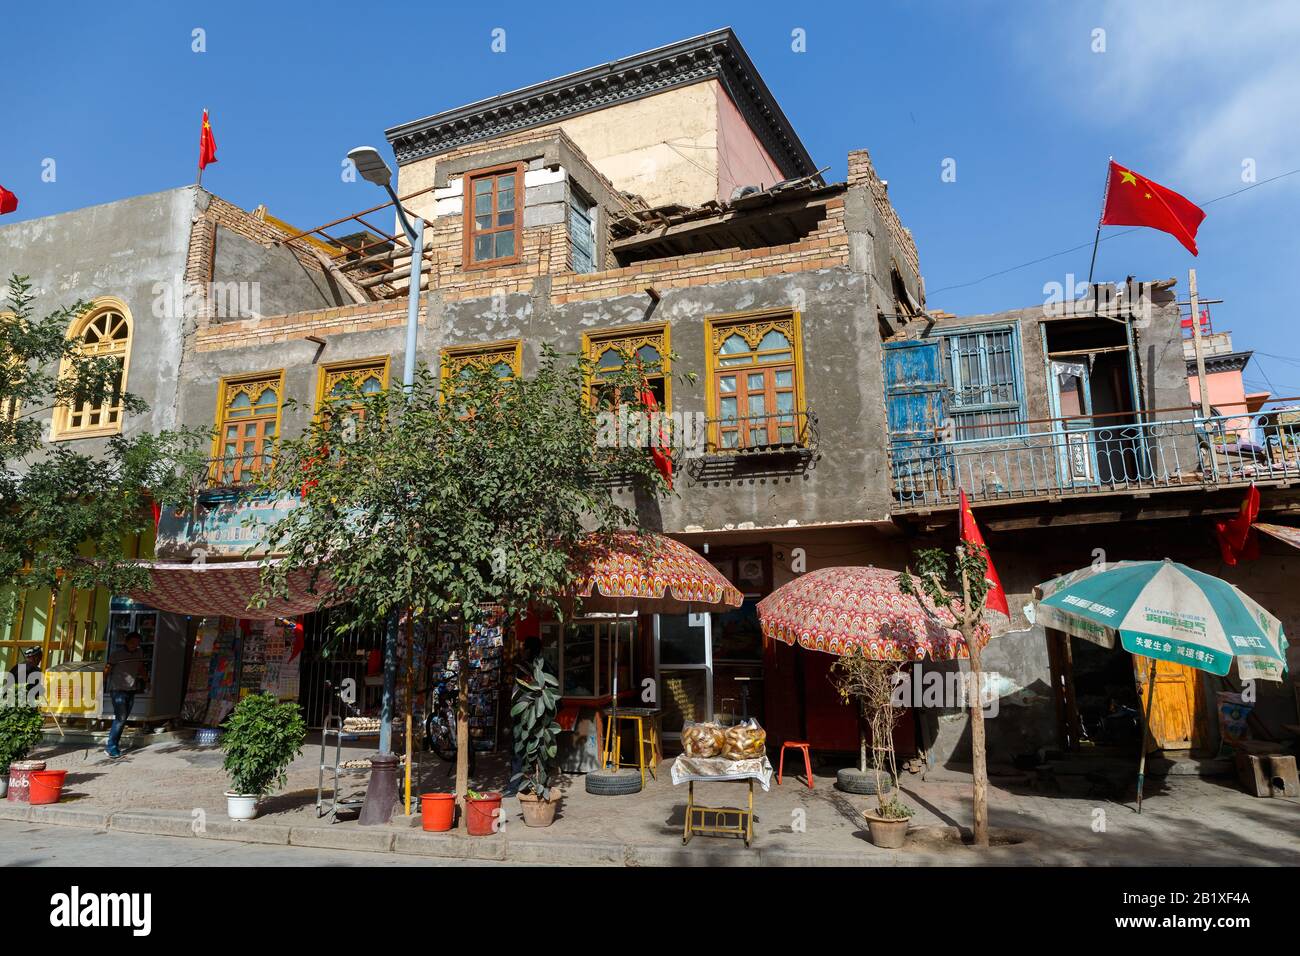 Maison Dans La Vieille Ville De Kashgar. Plusieurs drapeaux chinois sont placés sur les murs latéraux et sur le dessus du bâtiment. Capturé Pendant Les Fêtes Nationales Chinoises. Banque D'Images